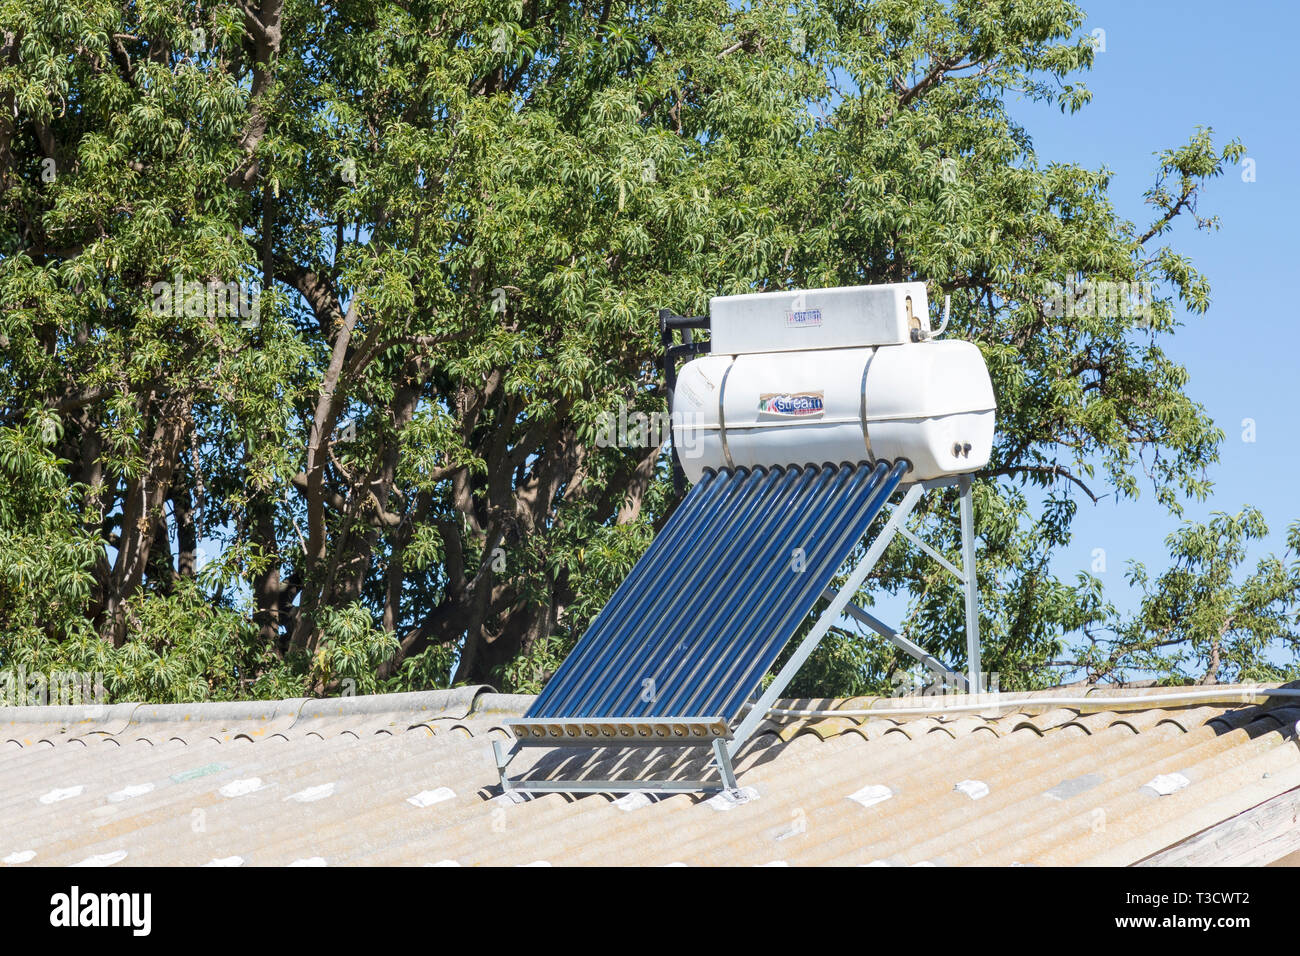 Landarbeiter Cottage mit kleinen Dach Solar Warmwasser Geysir und Photovoltaikanlage, Natürliche Ressourcen, erneuerbare und nachhaltige, Leistung, Energie, er Stockfoto